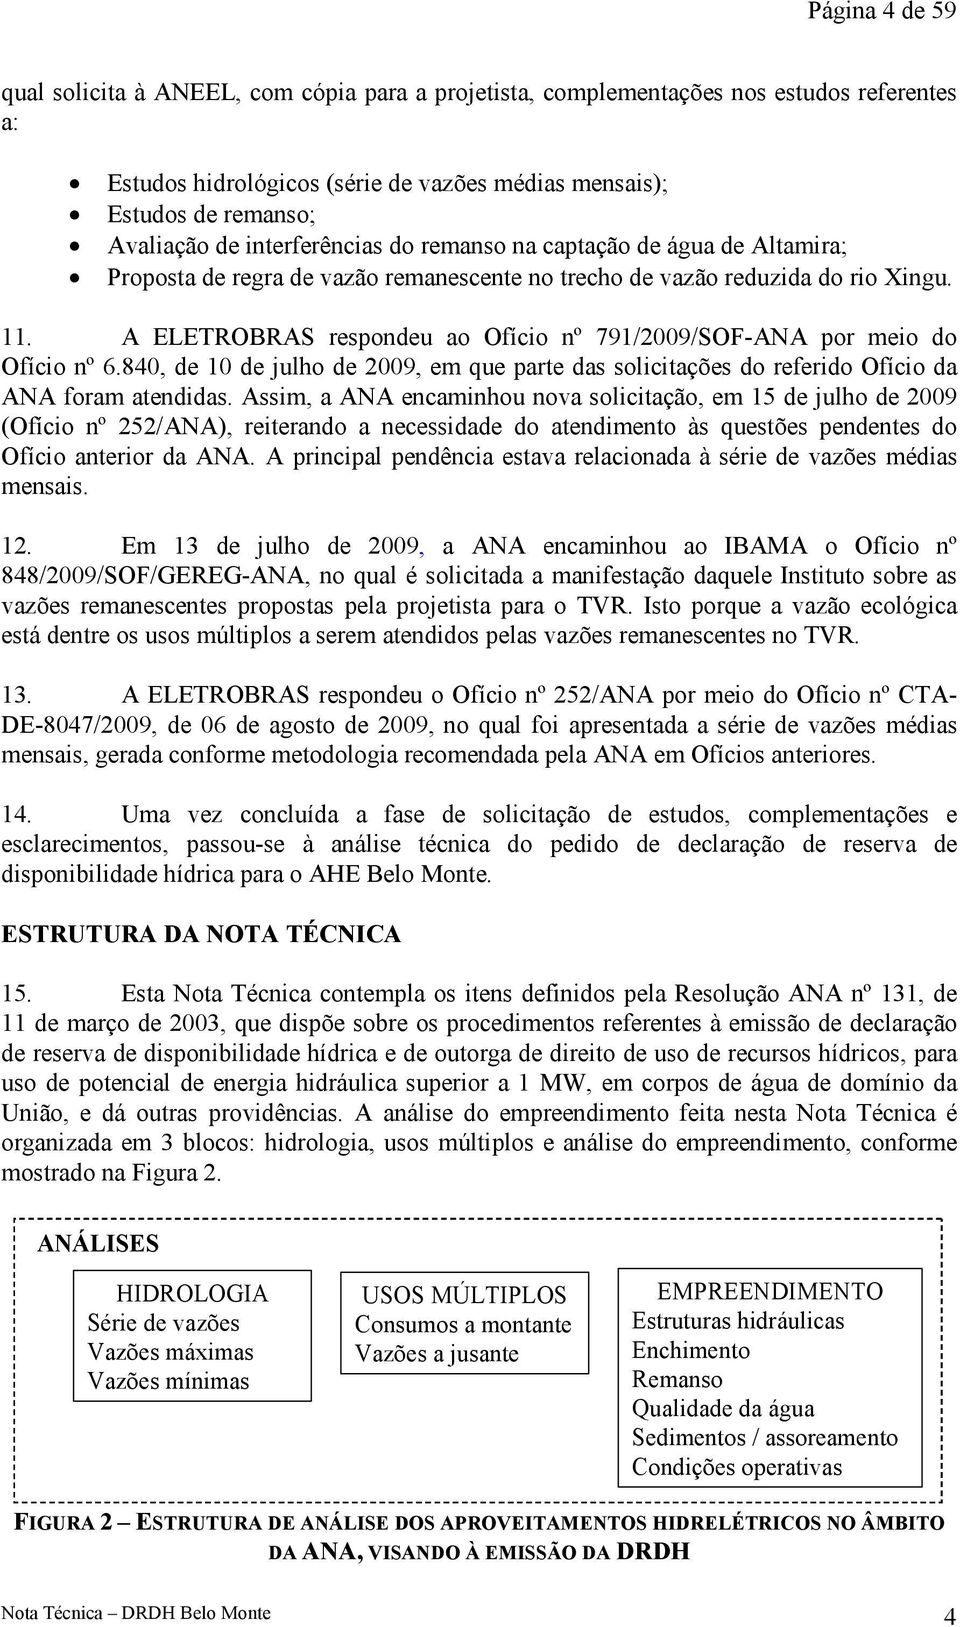 A ELETROBRAS respondeu ao Ofício nº 791/2009/SOF-ANA por meio do Ofício nº 6.840, de 10 de julho de 2009, em que parte das solicitações do referido Ofício da ANA foram atendidas.